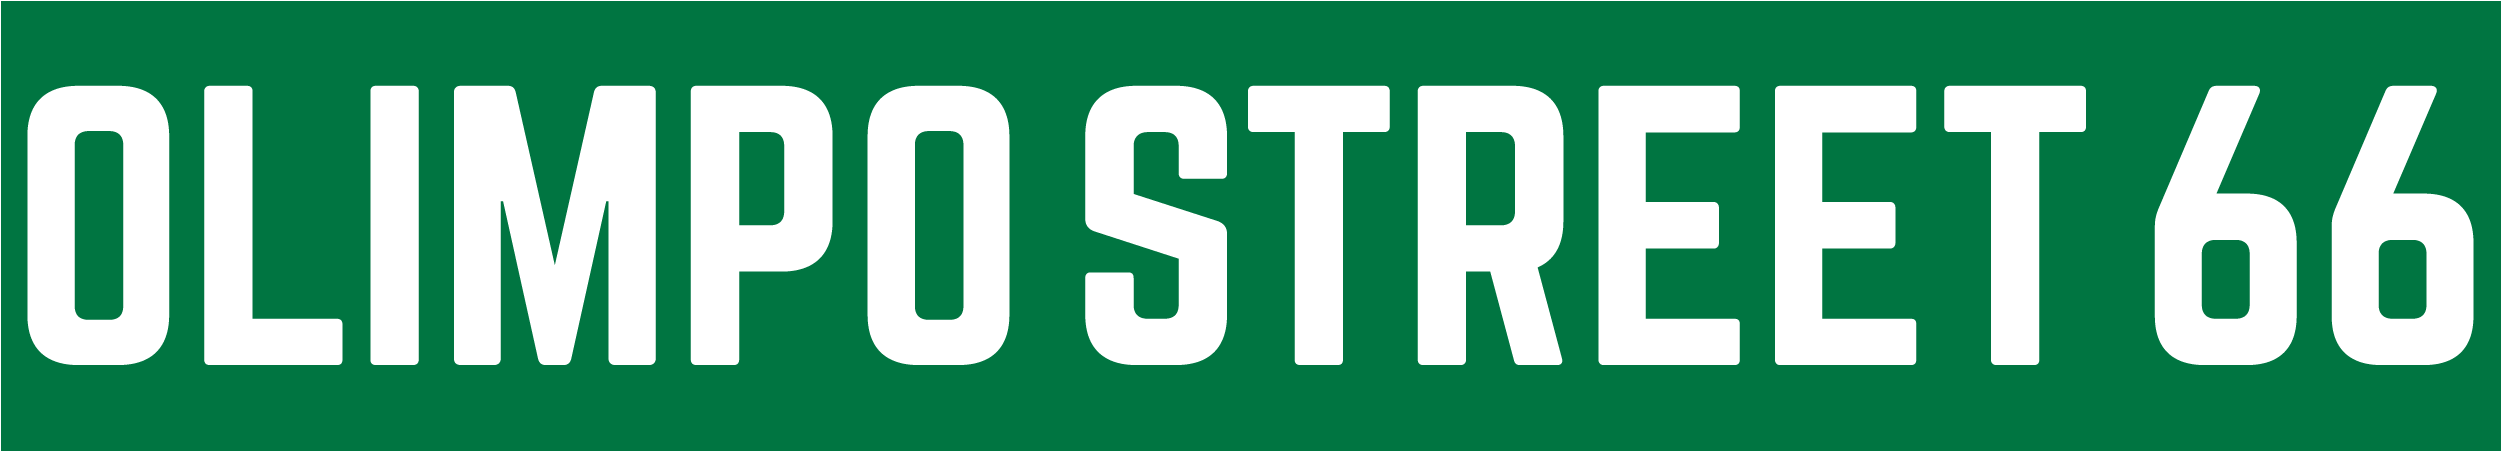 logo street-01